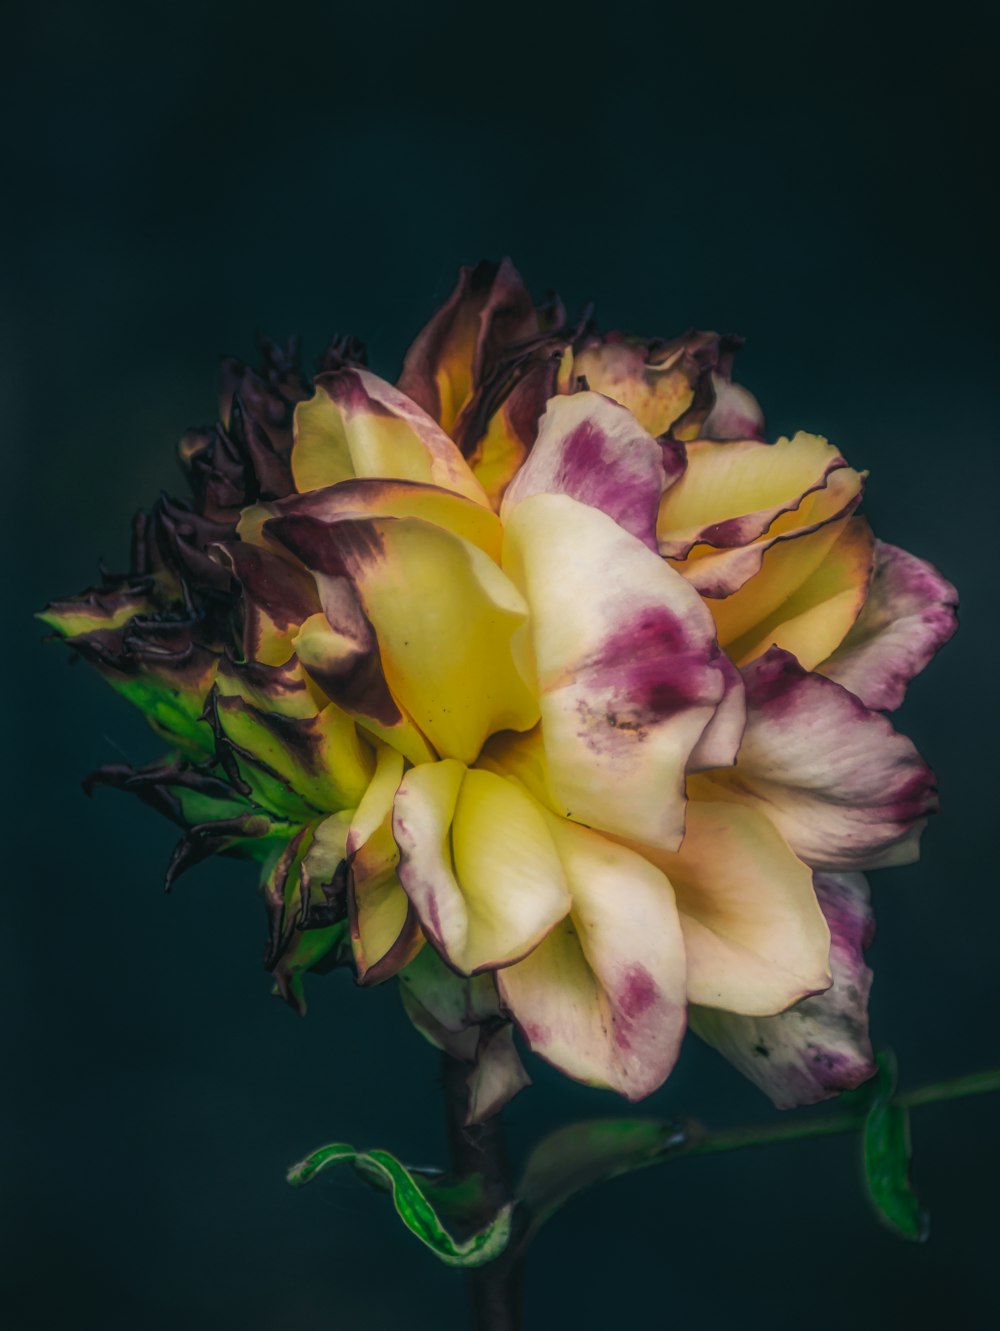 fiore giallo e viola nella fotografia ravvicinata